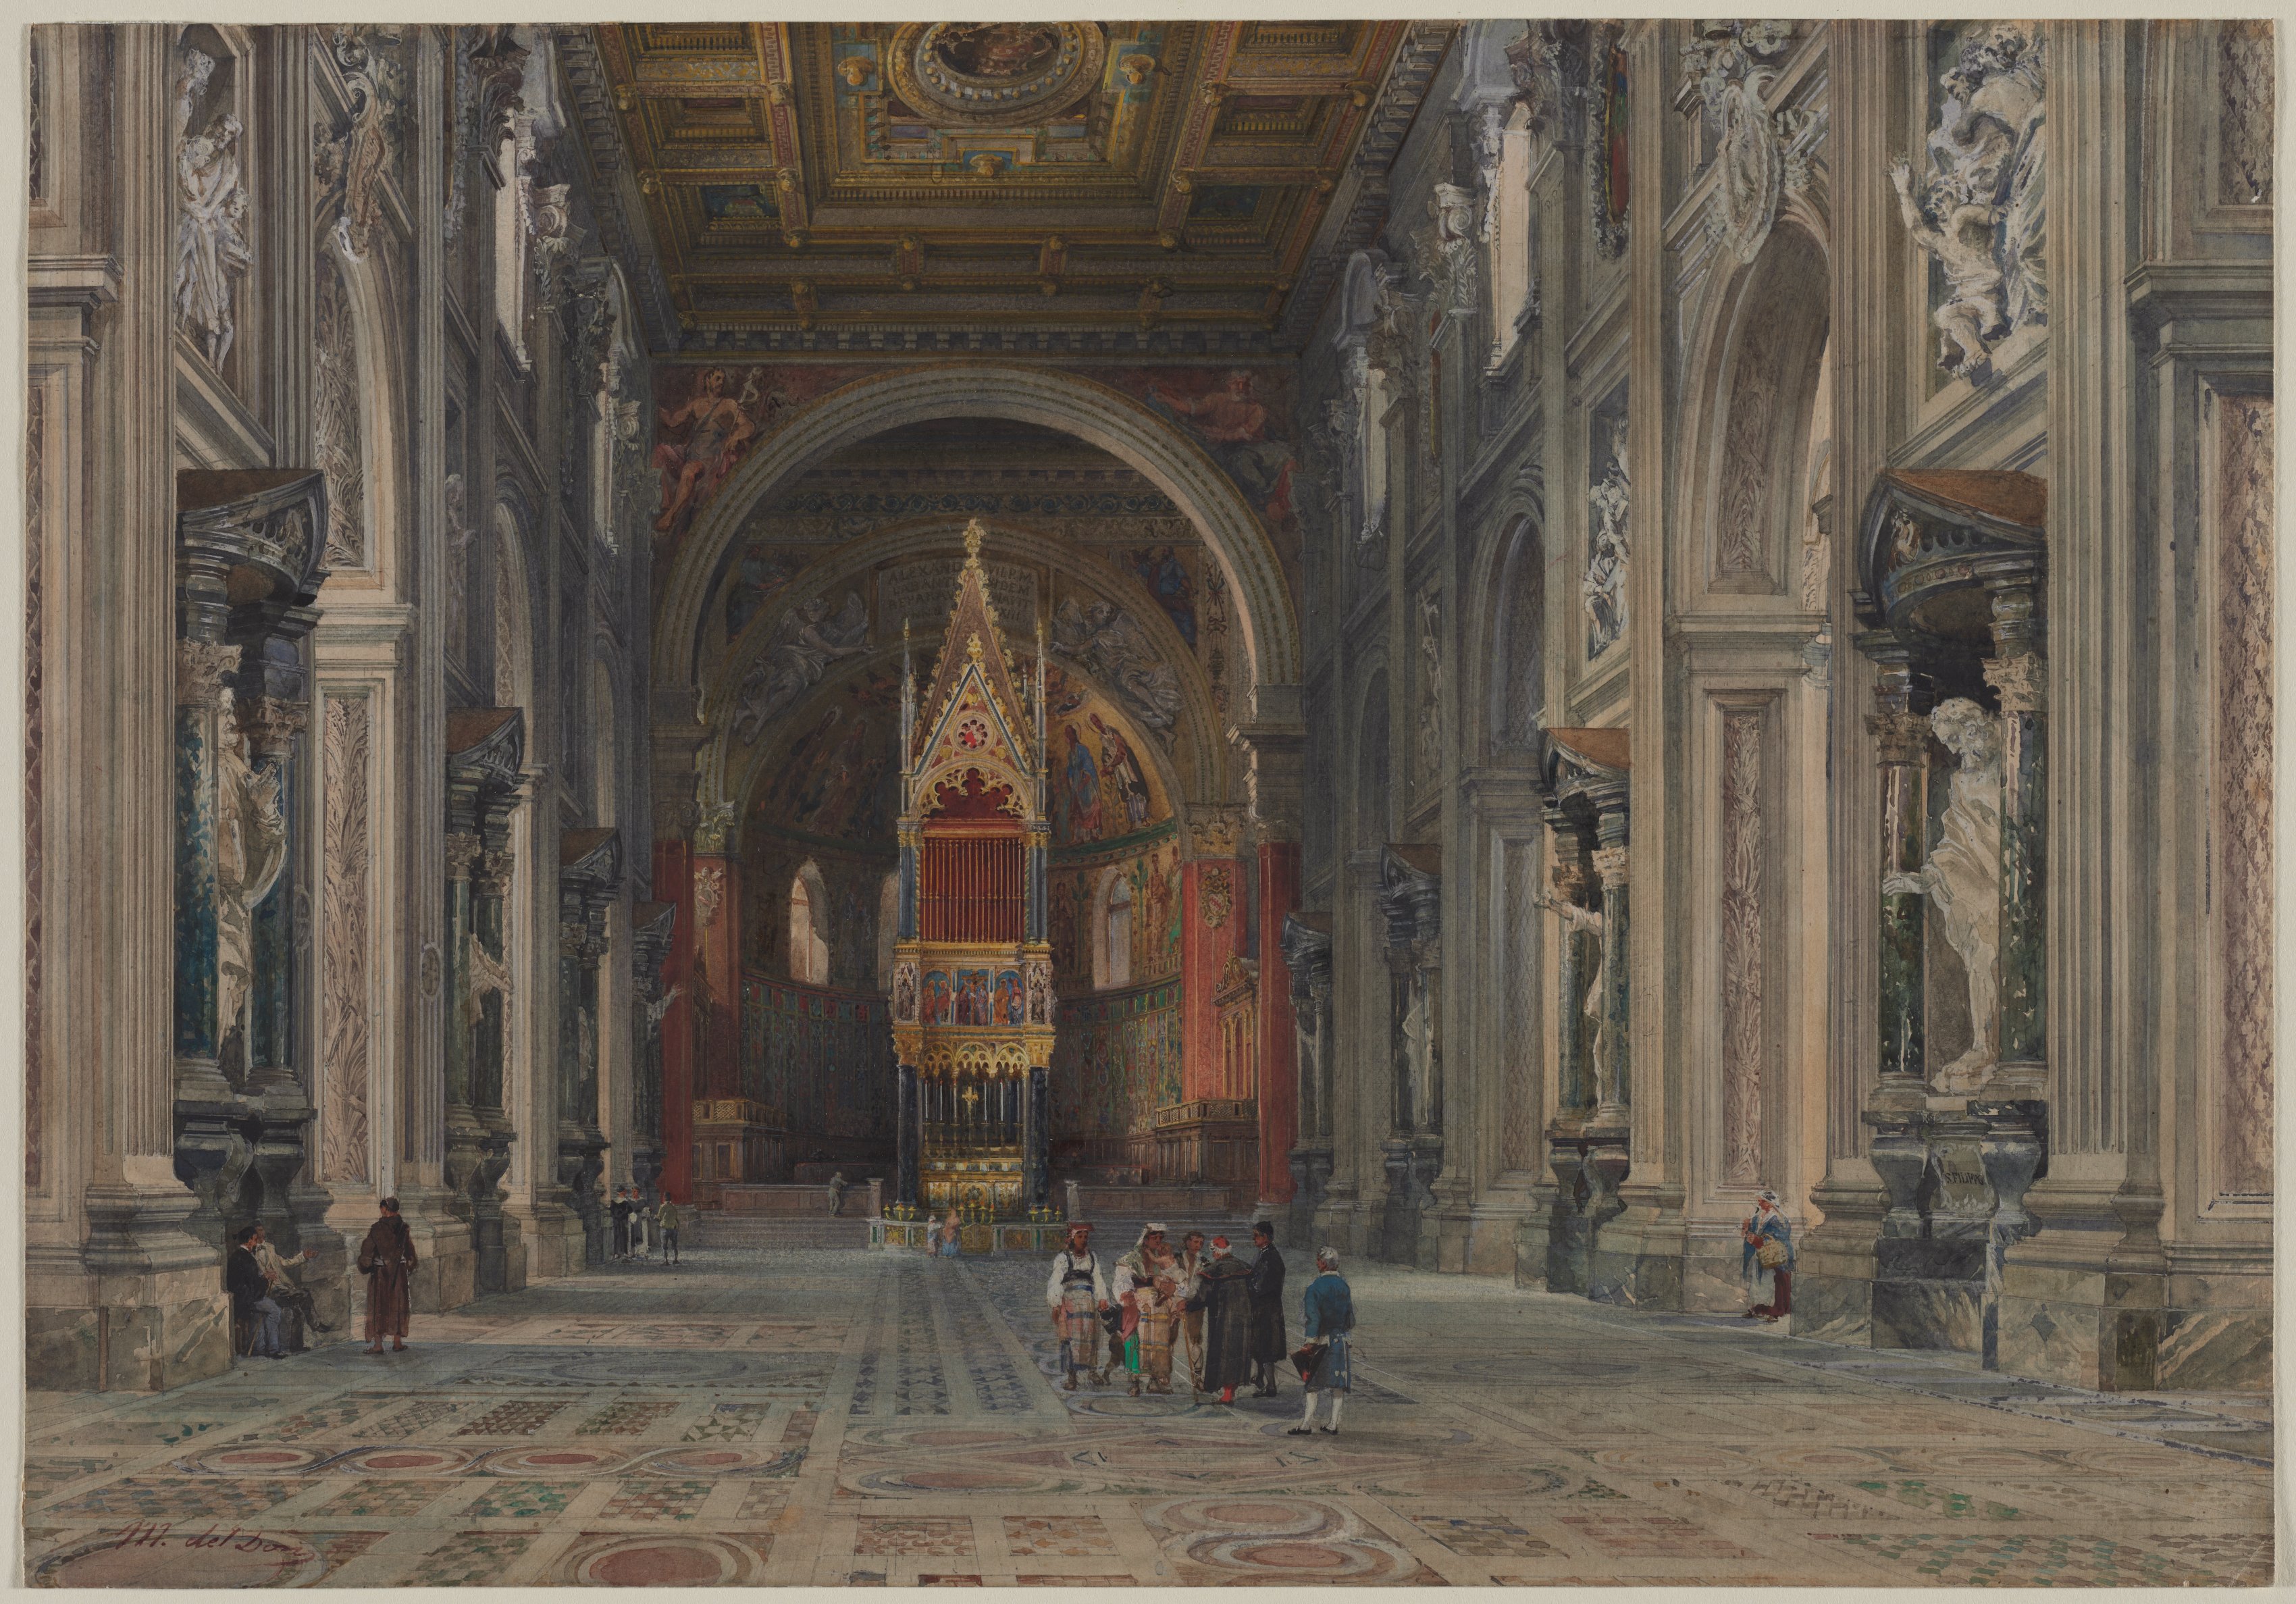 Interior of San Giovanni in Laterano, Rome